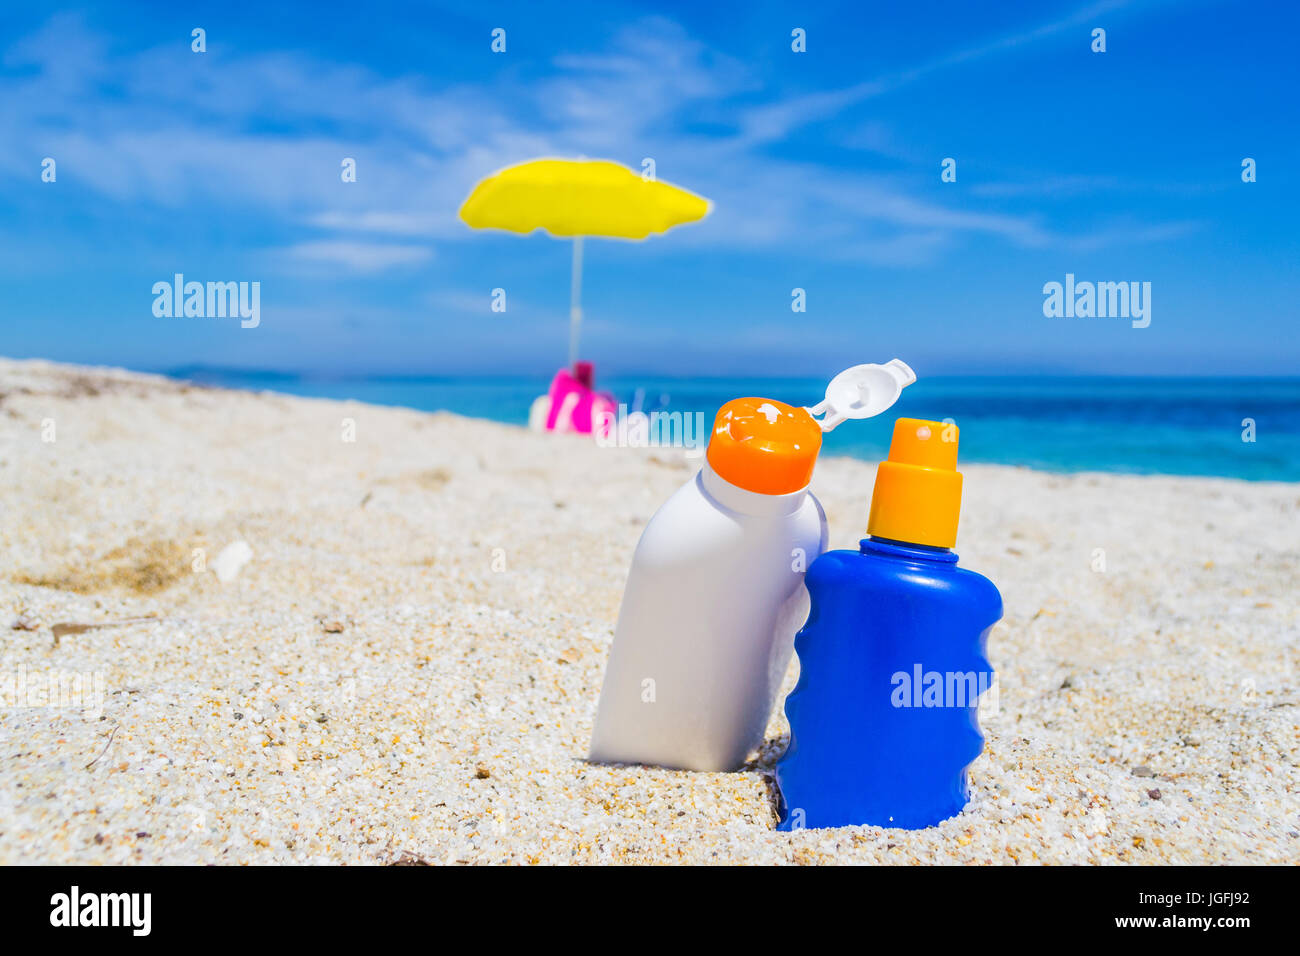 suntan lotion bottles on the sand Stock Photo